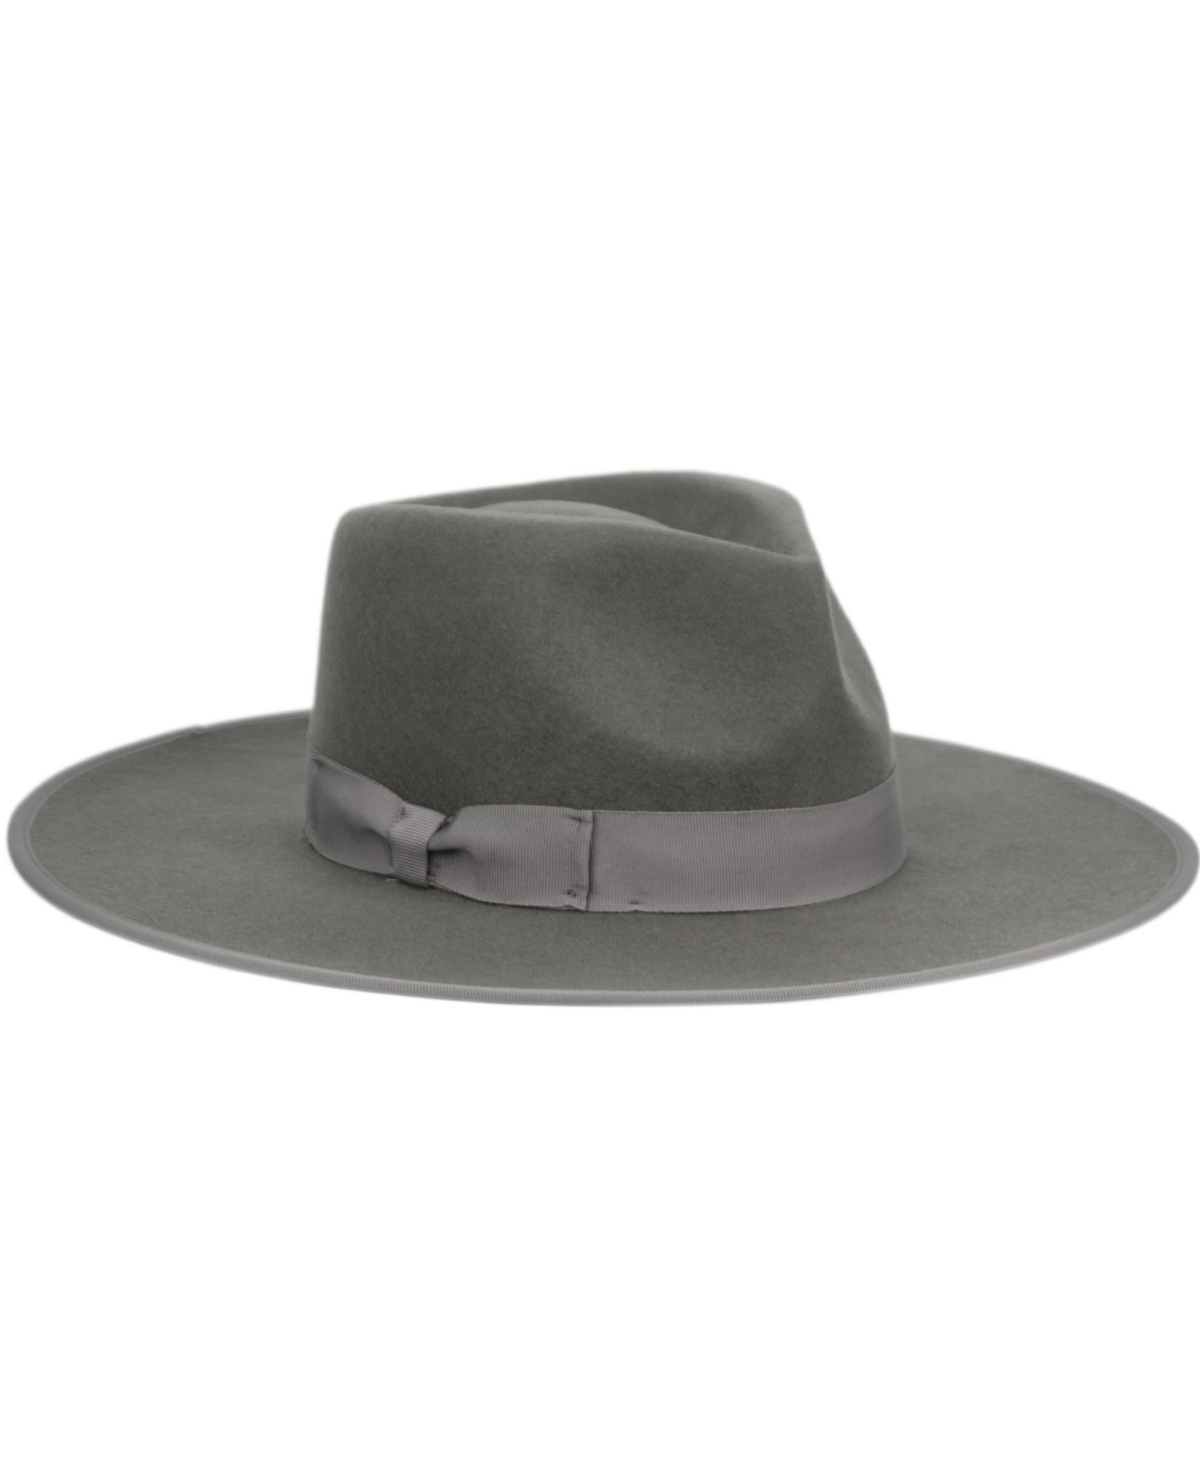 Angela & William Women's Wide Brim Felt Rancher Fedora Hat In Dark Gray